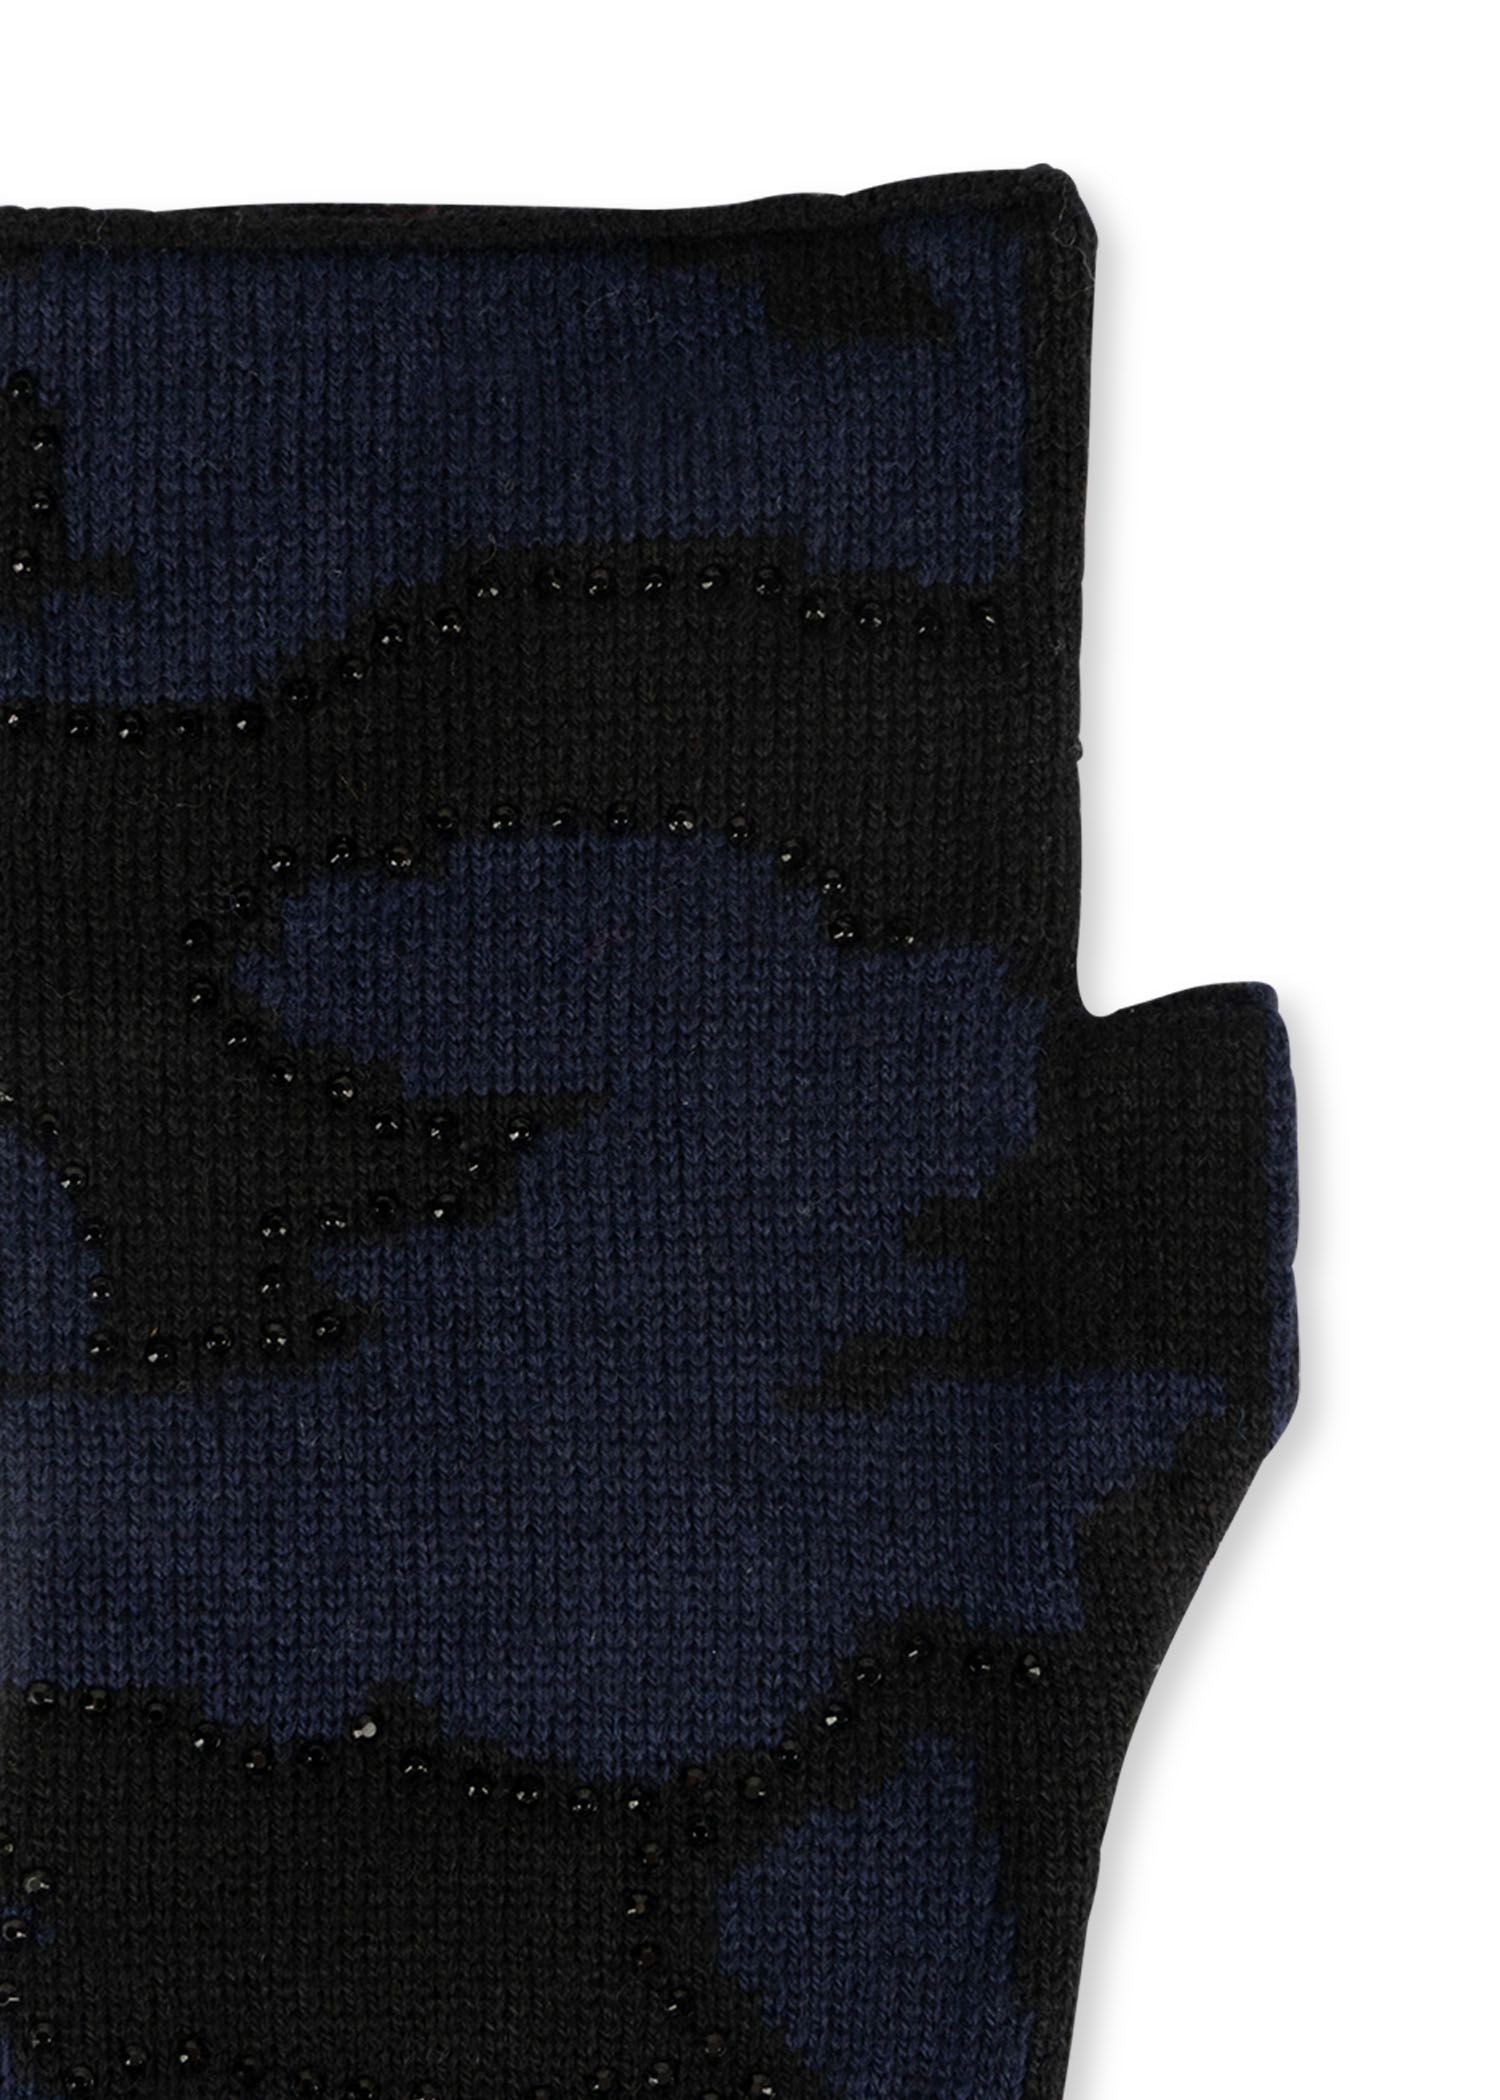 colorado black/navy camo fingerless gloves